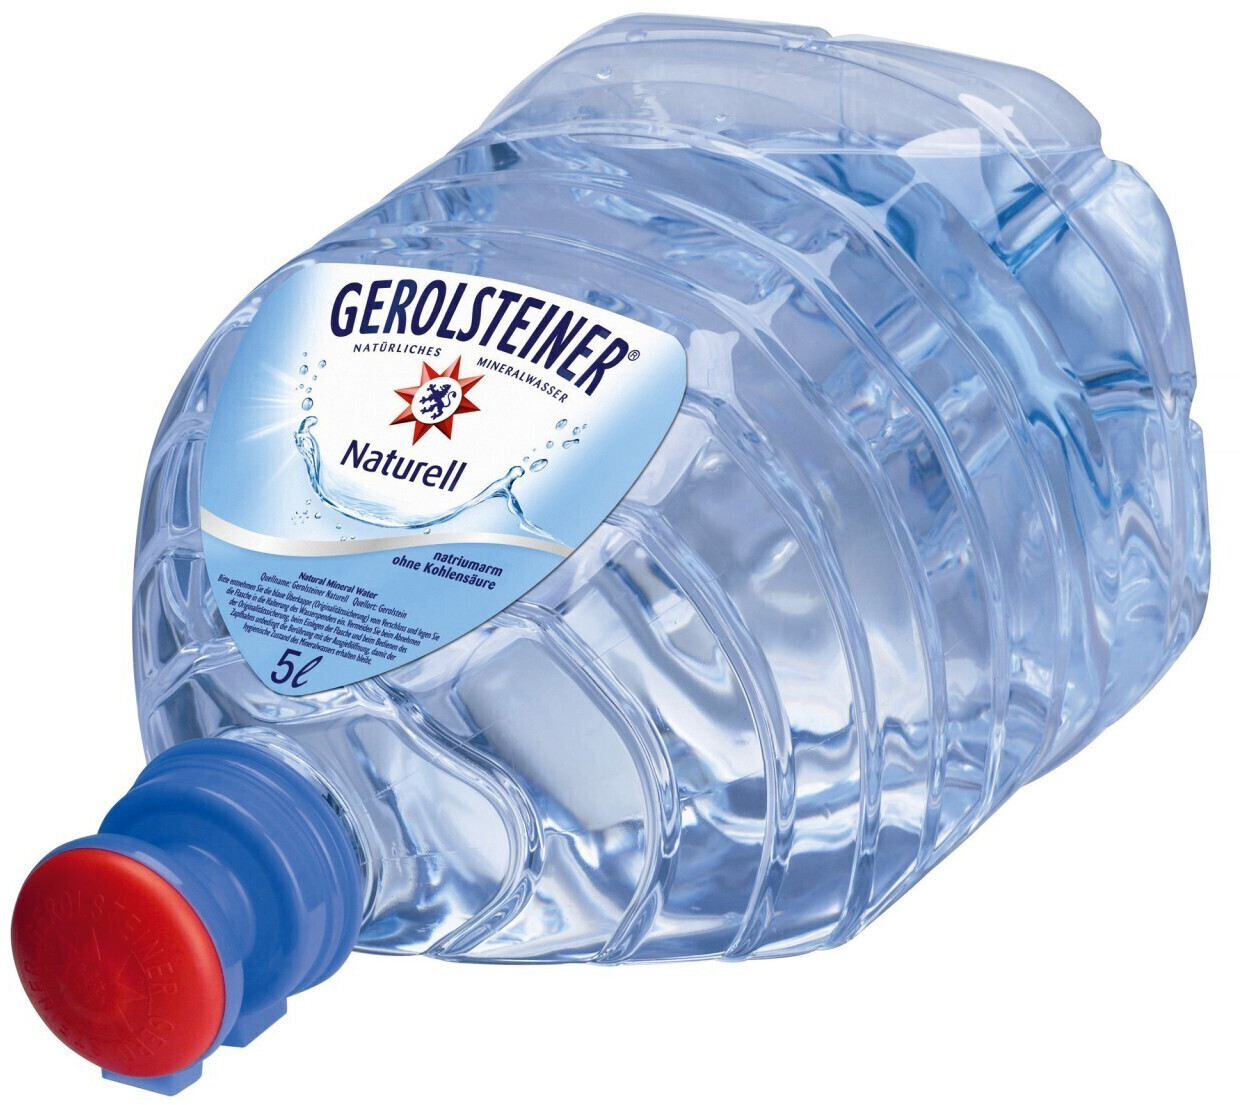 10 Liter Wasser in Flaschen - Kaufen Sie 10 Liter Wasser in